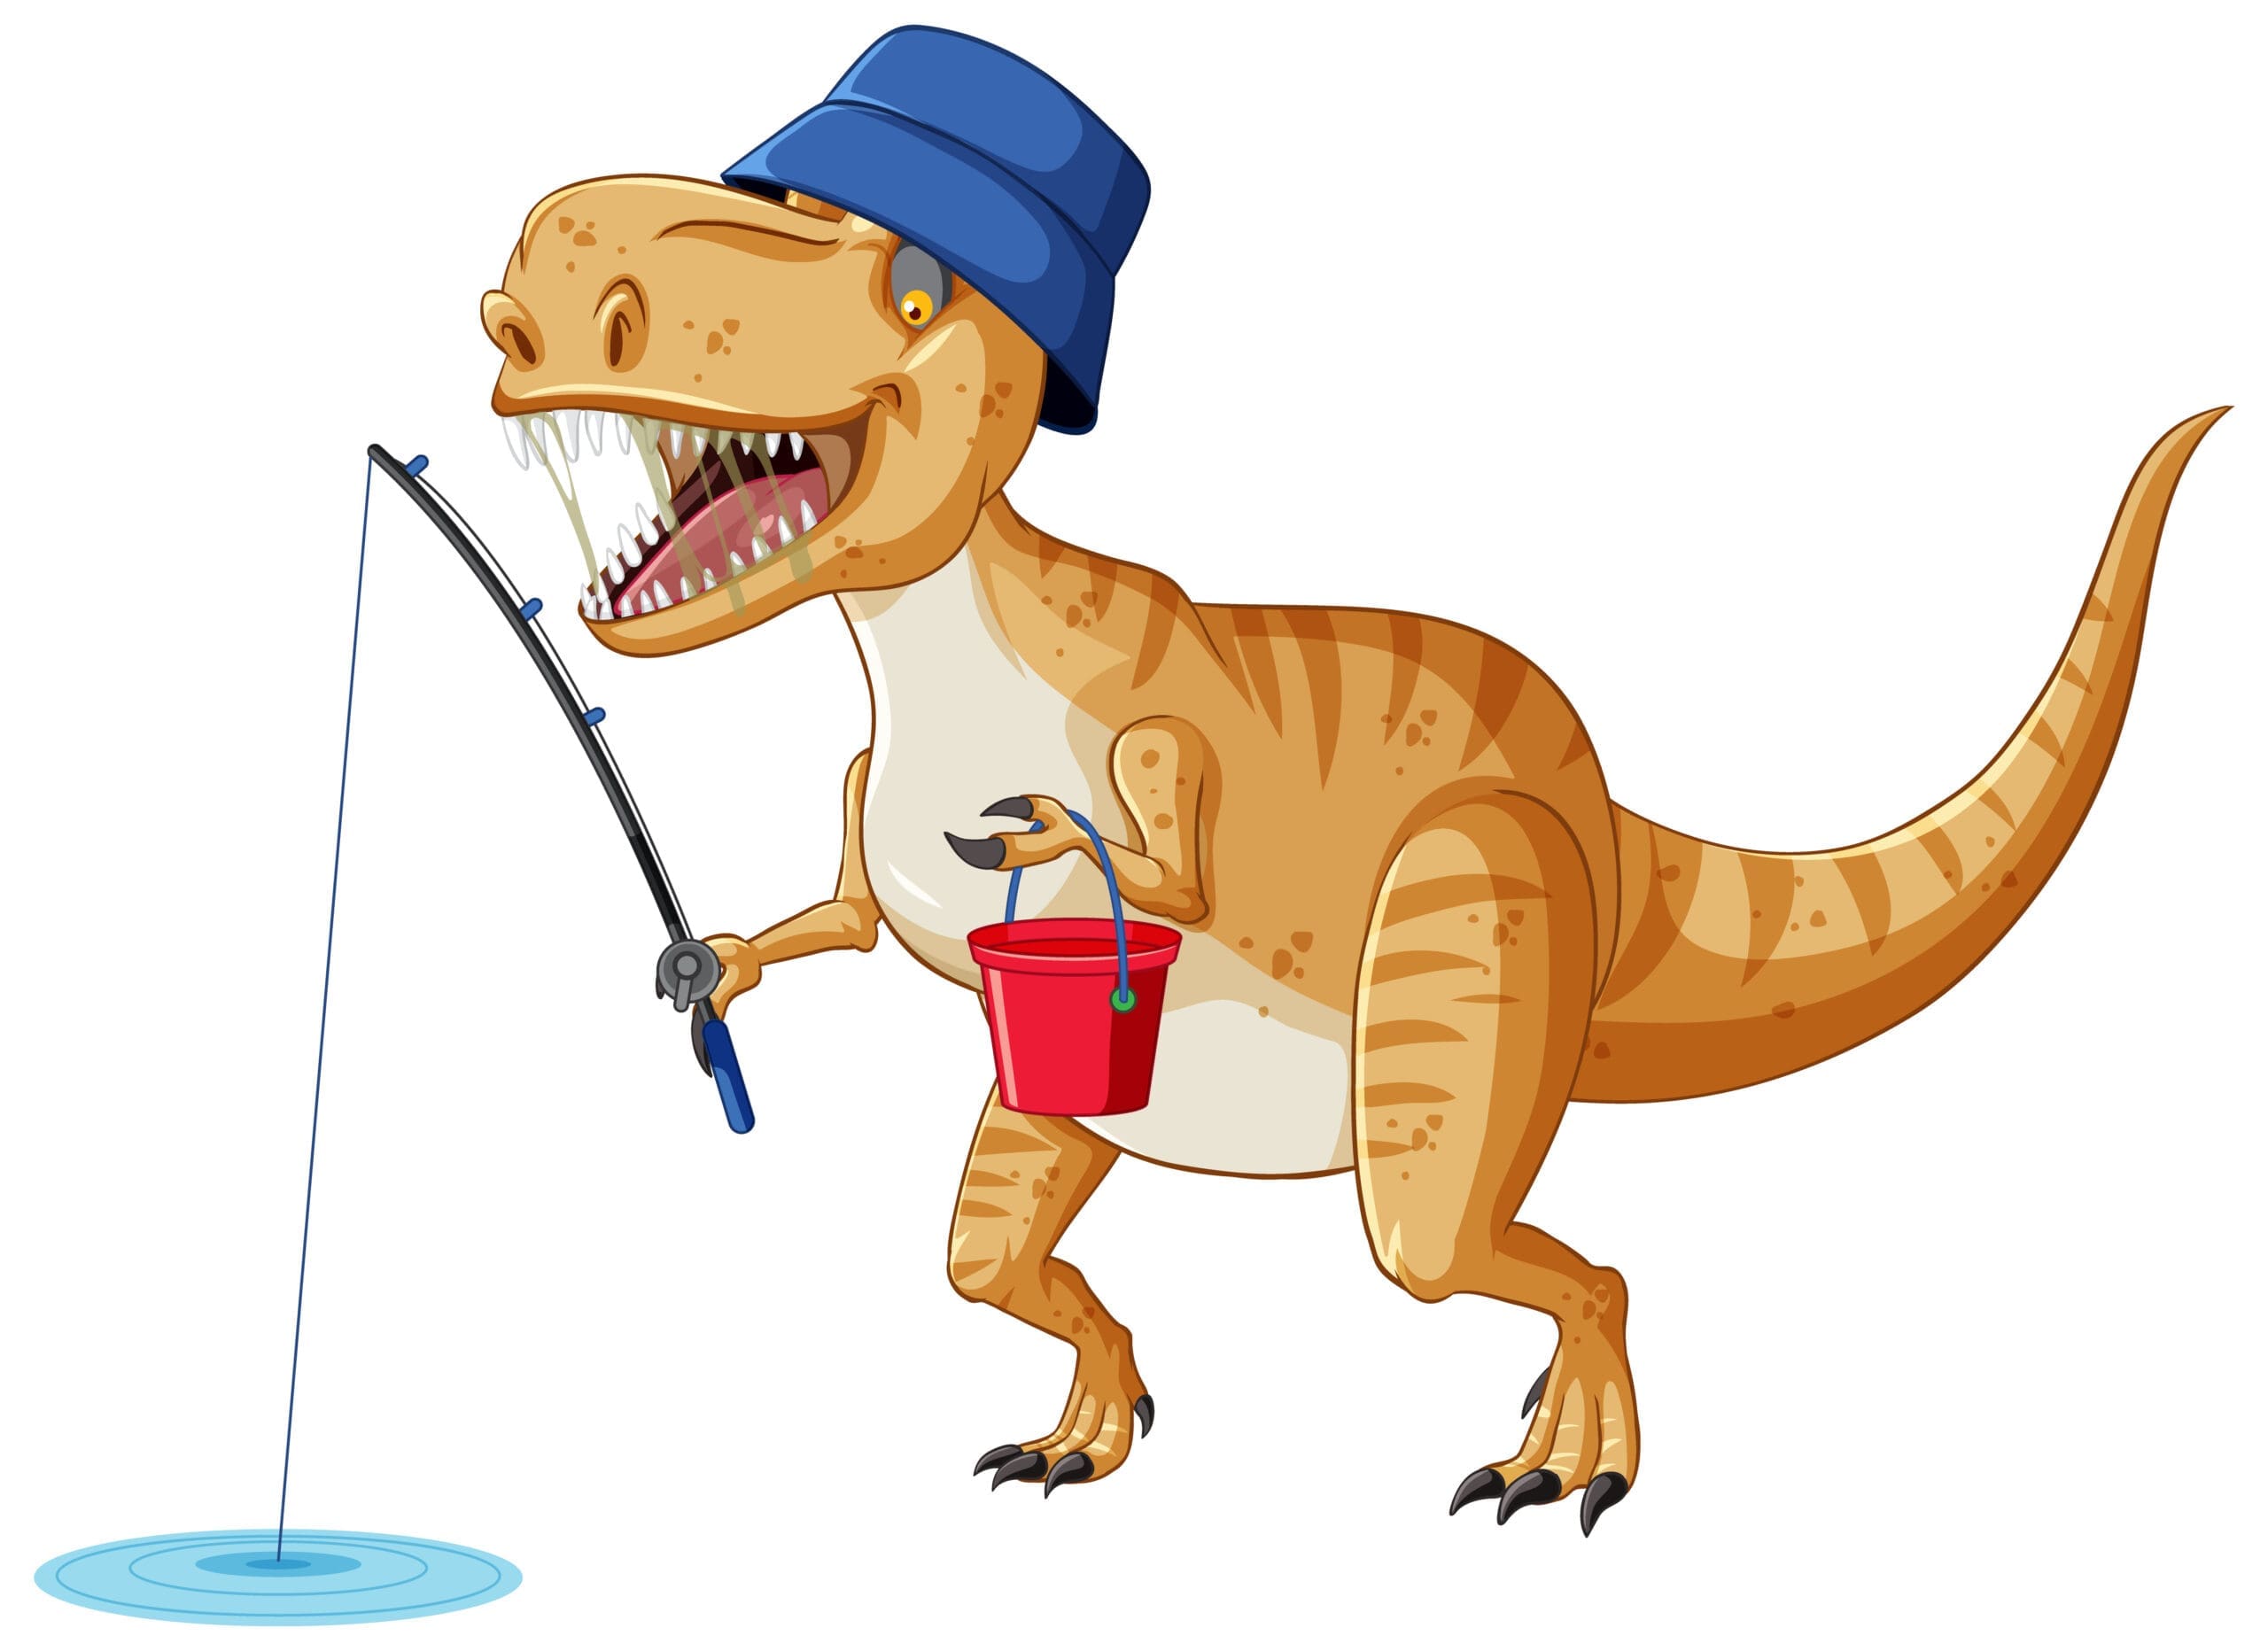 Tyrannosaurus rex dinosaur fishing in cartoon style